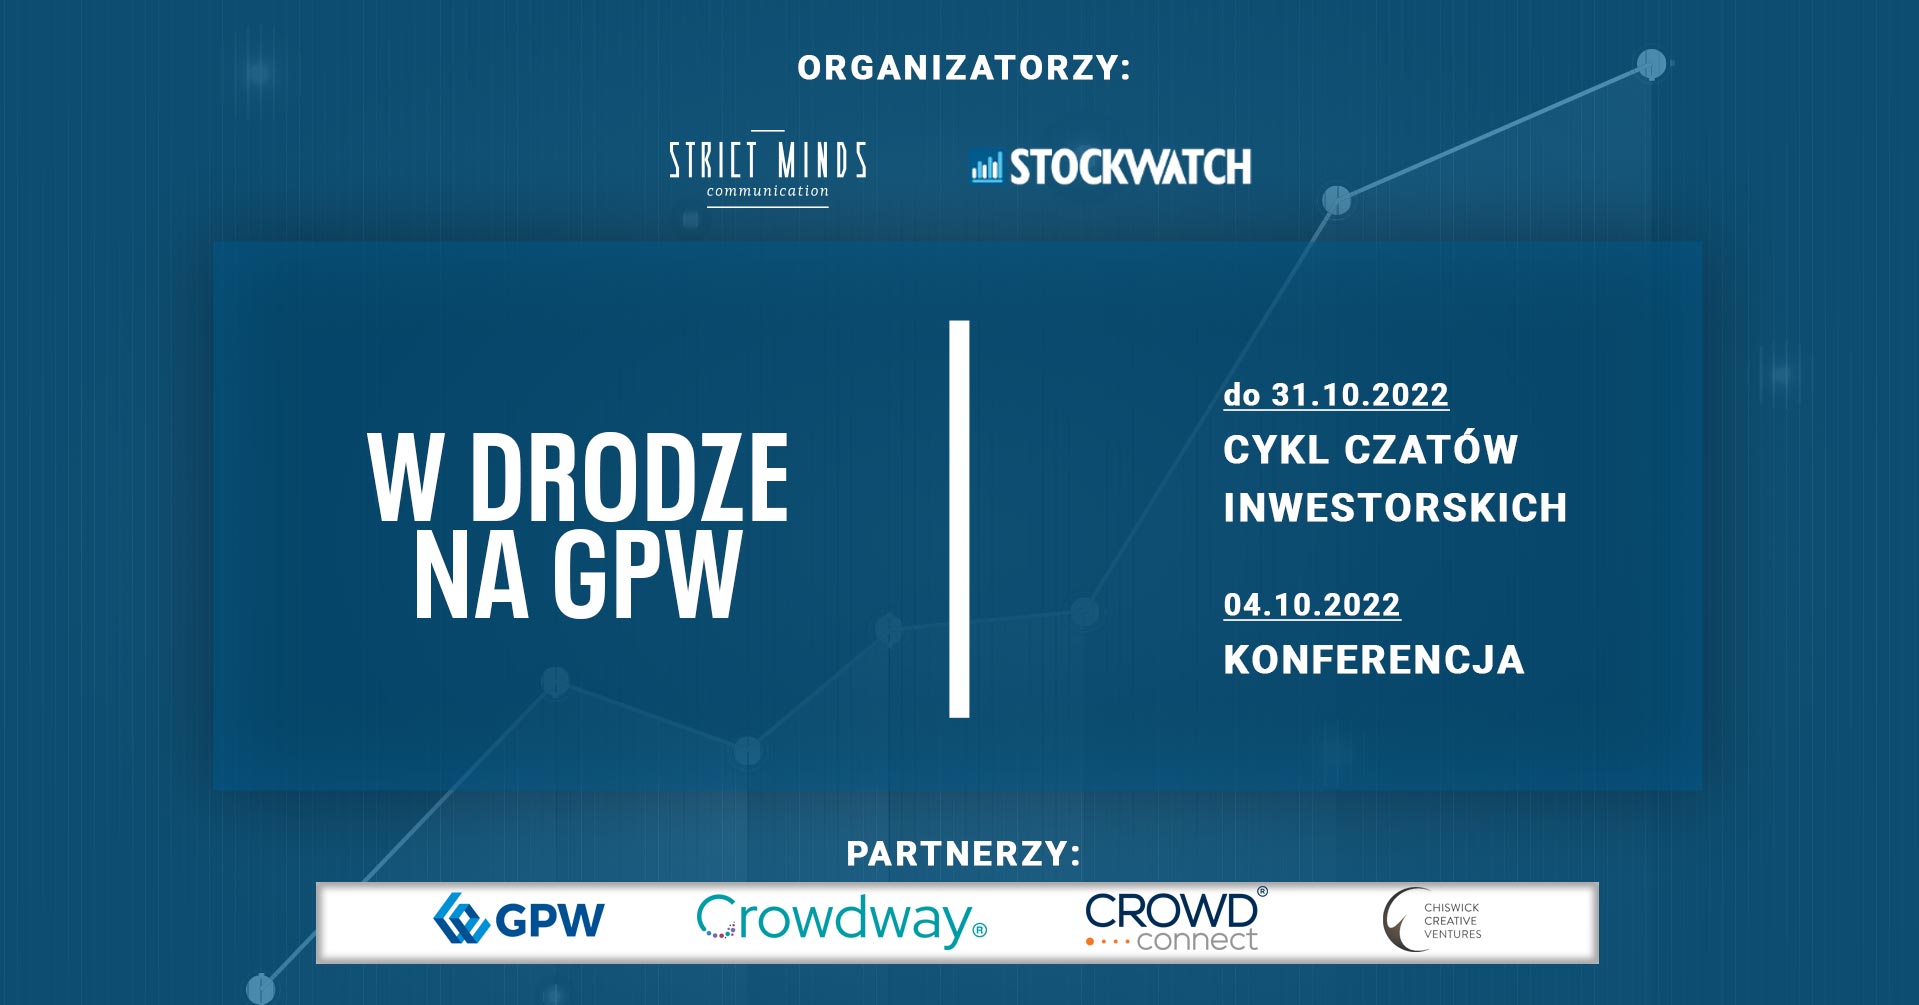 Darmowa konferencja on-line "W drodze na GPW" rusza we wtorek 04.10 o 12:00